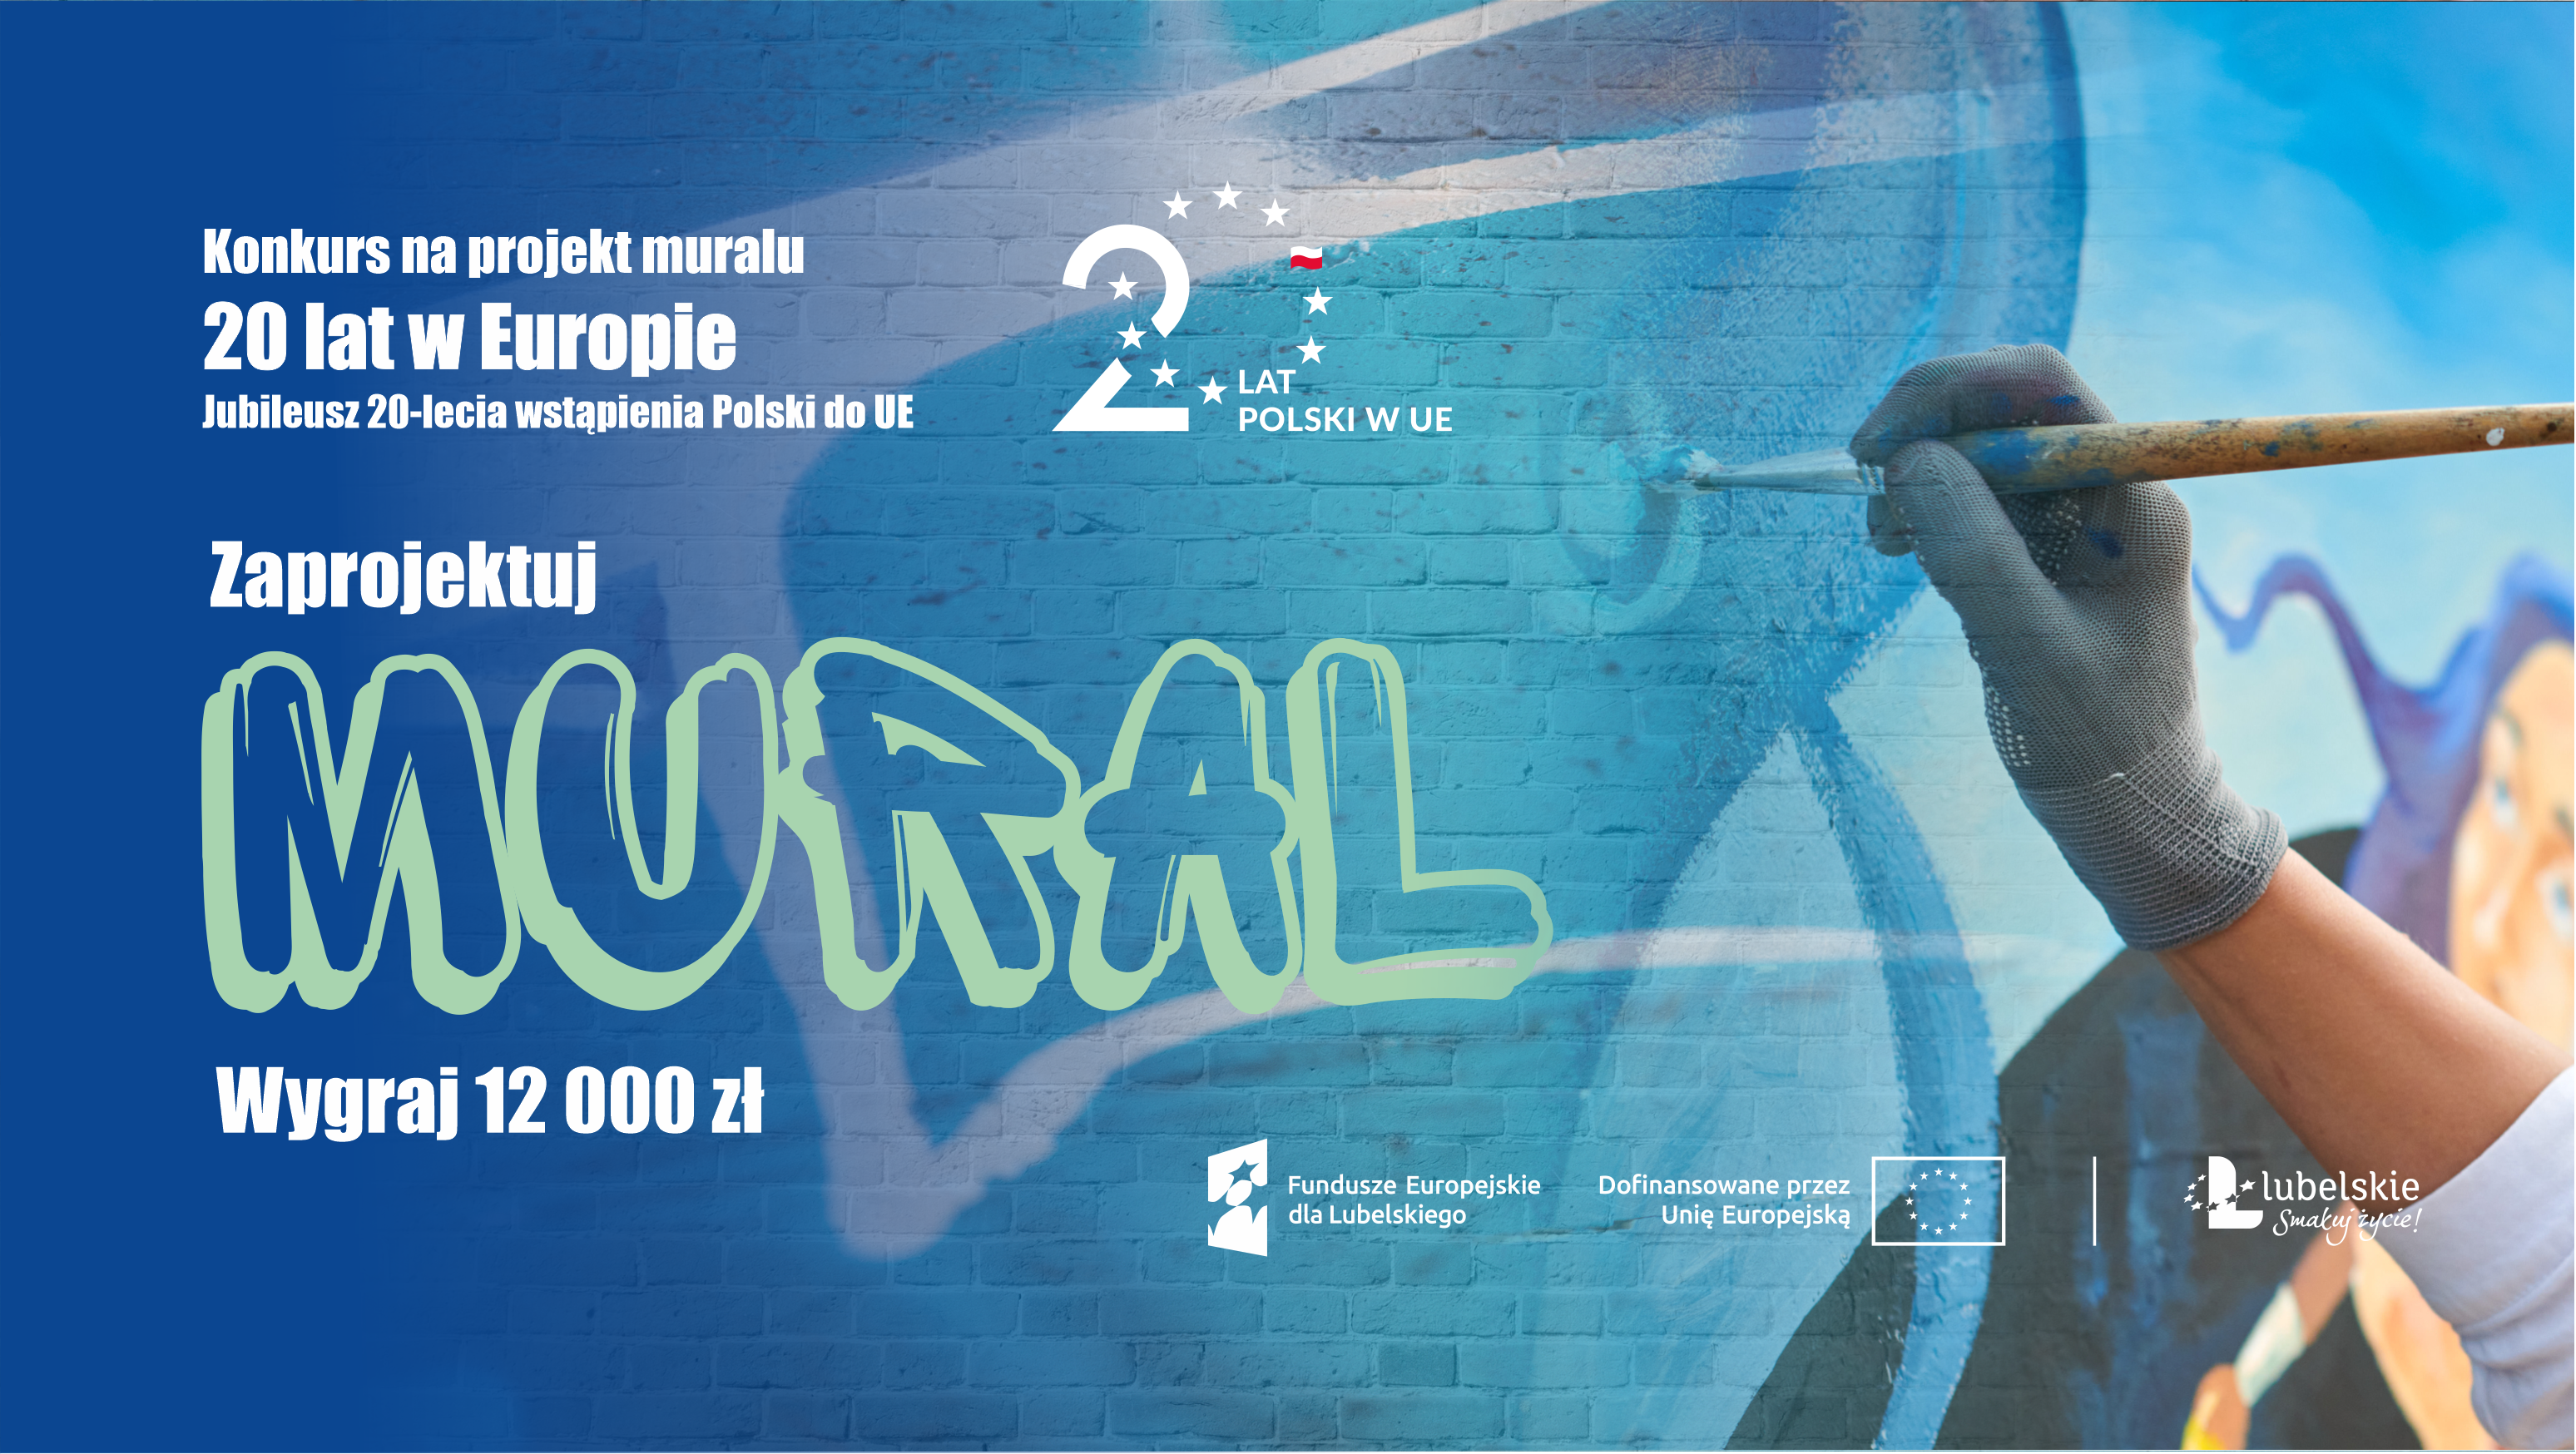 Konkurs na projekt muralu: 20 lat w Europie. Jubileusz 20-lecia wstąpienia Polski do Unii Europejskiej